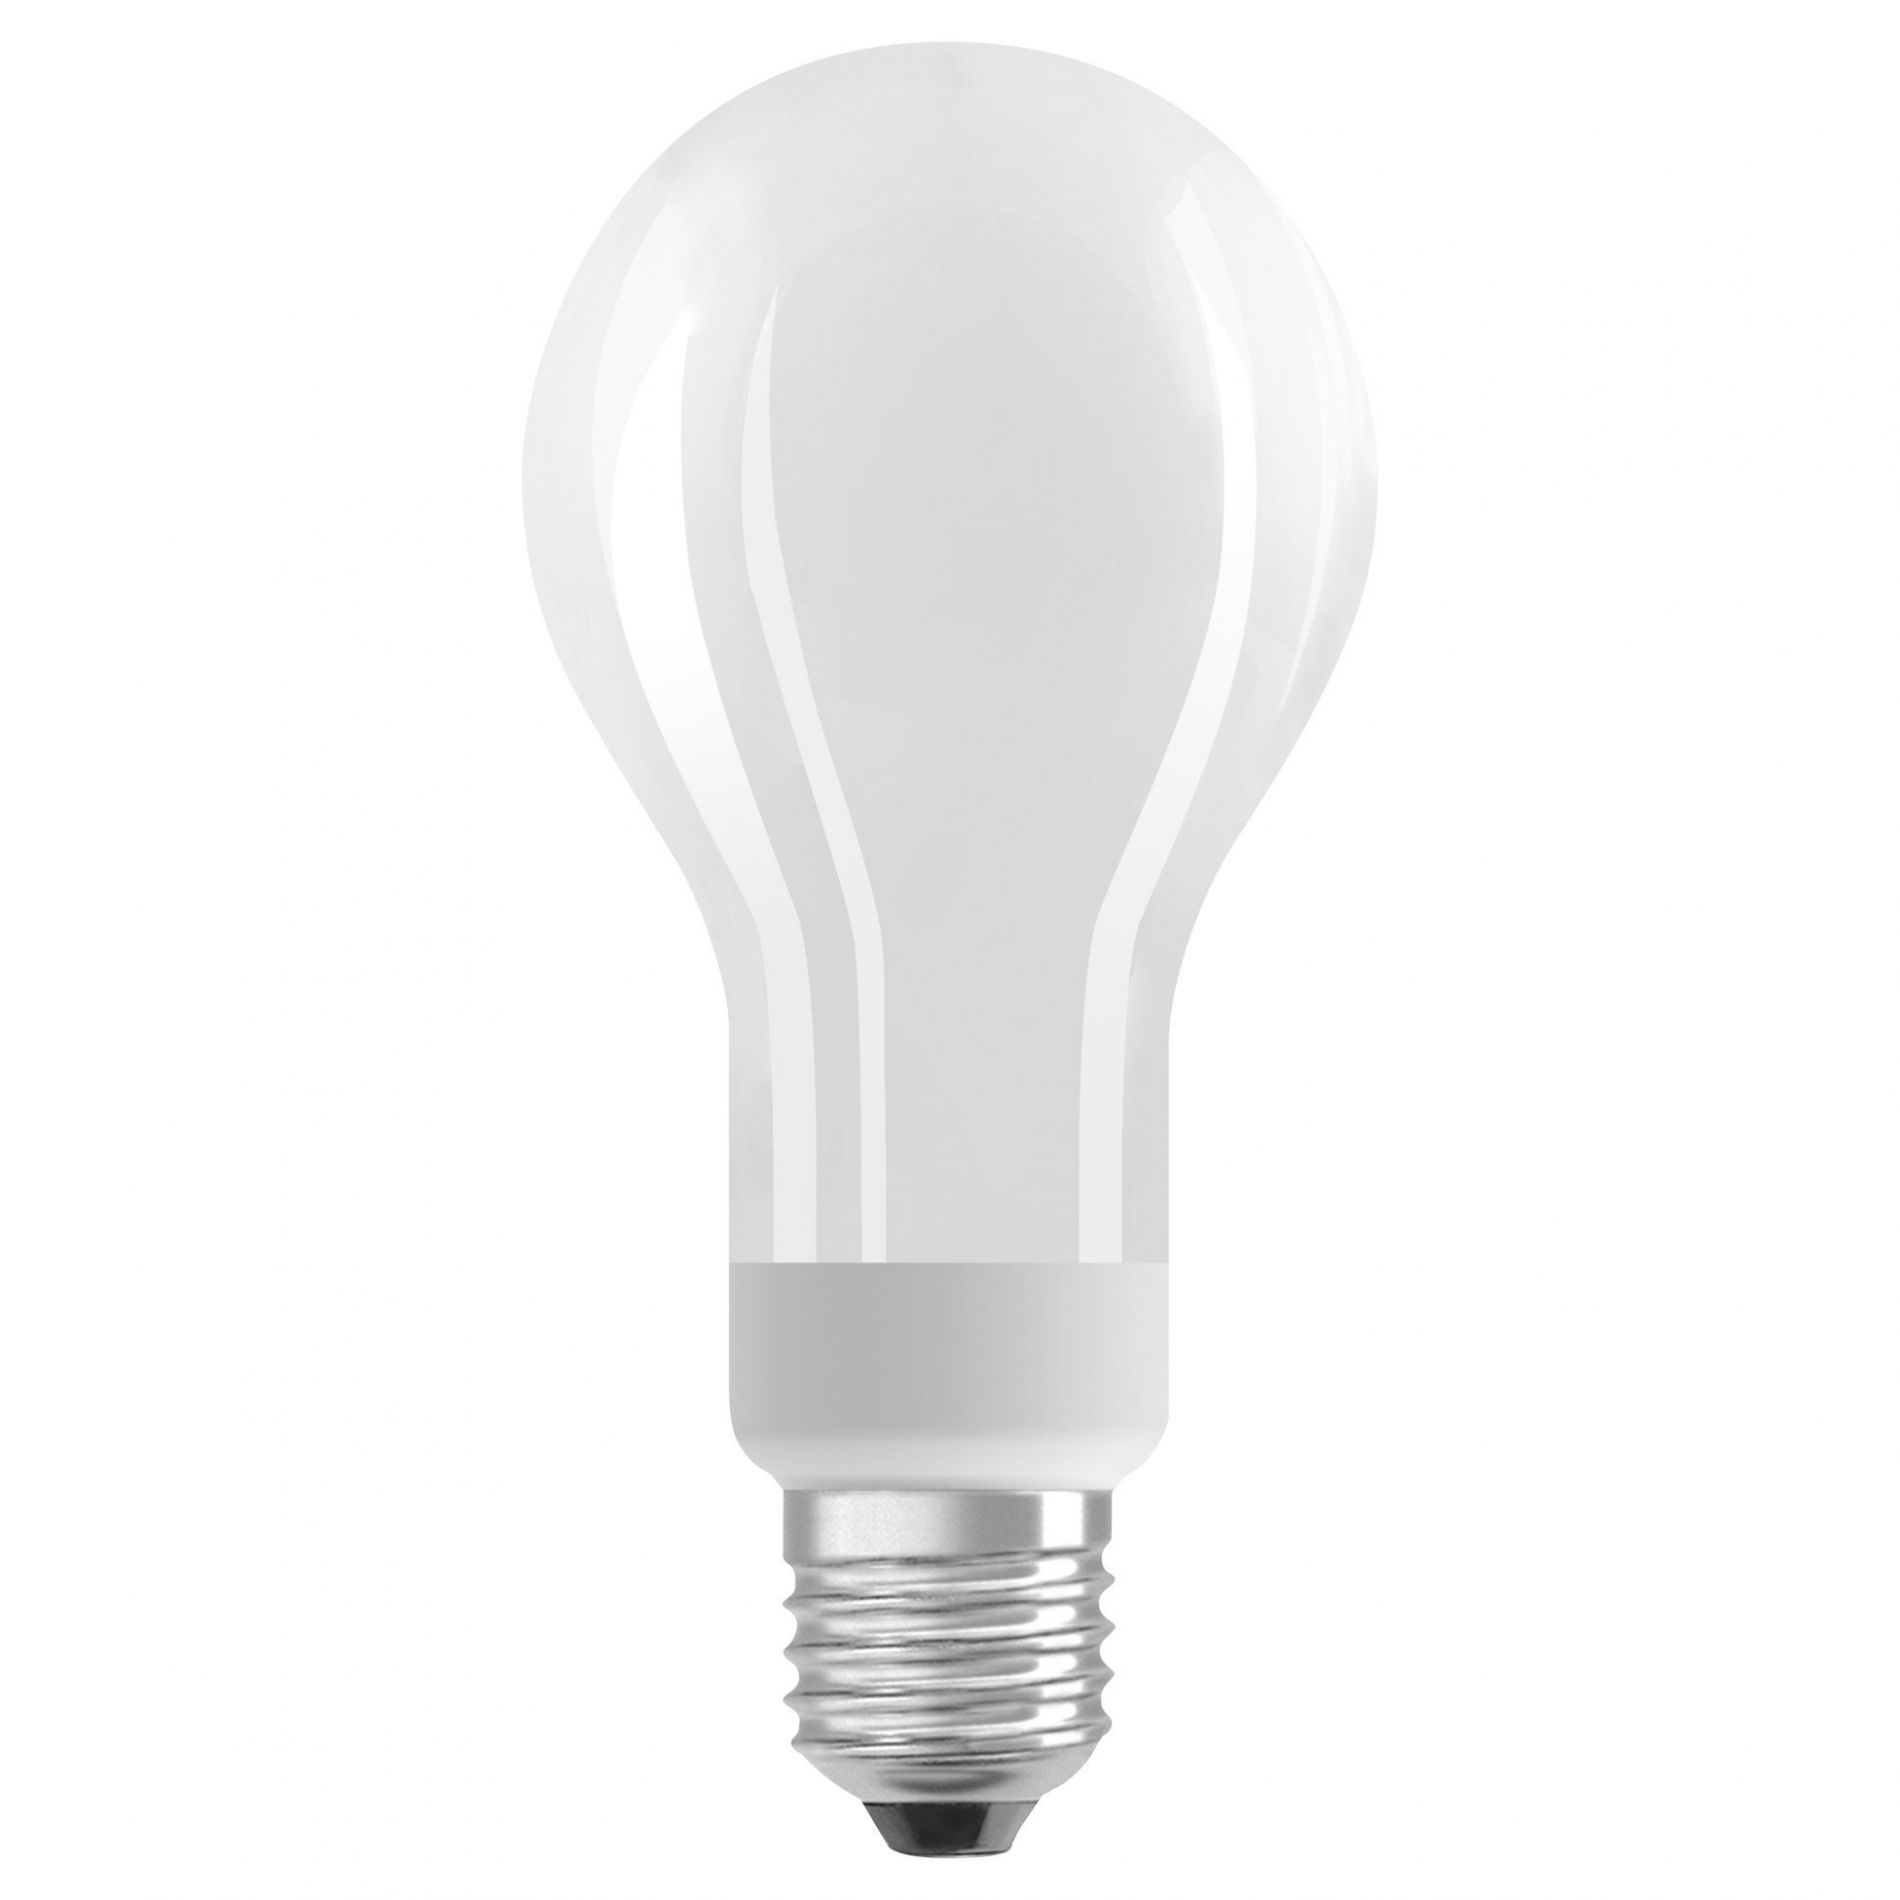 Ampoule LED dimmable E27 OPALE éclairage blanc chaud 18W 2452 lumens Ø7cm